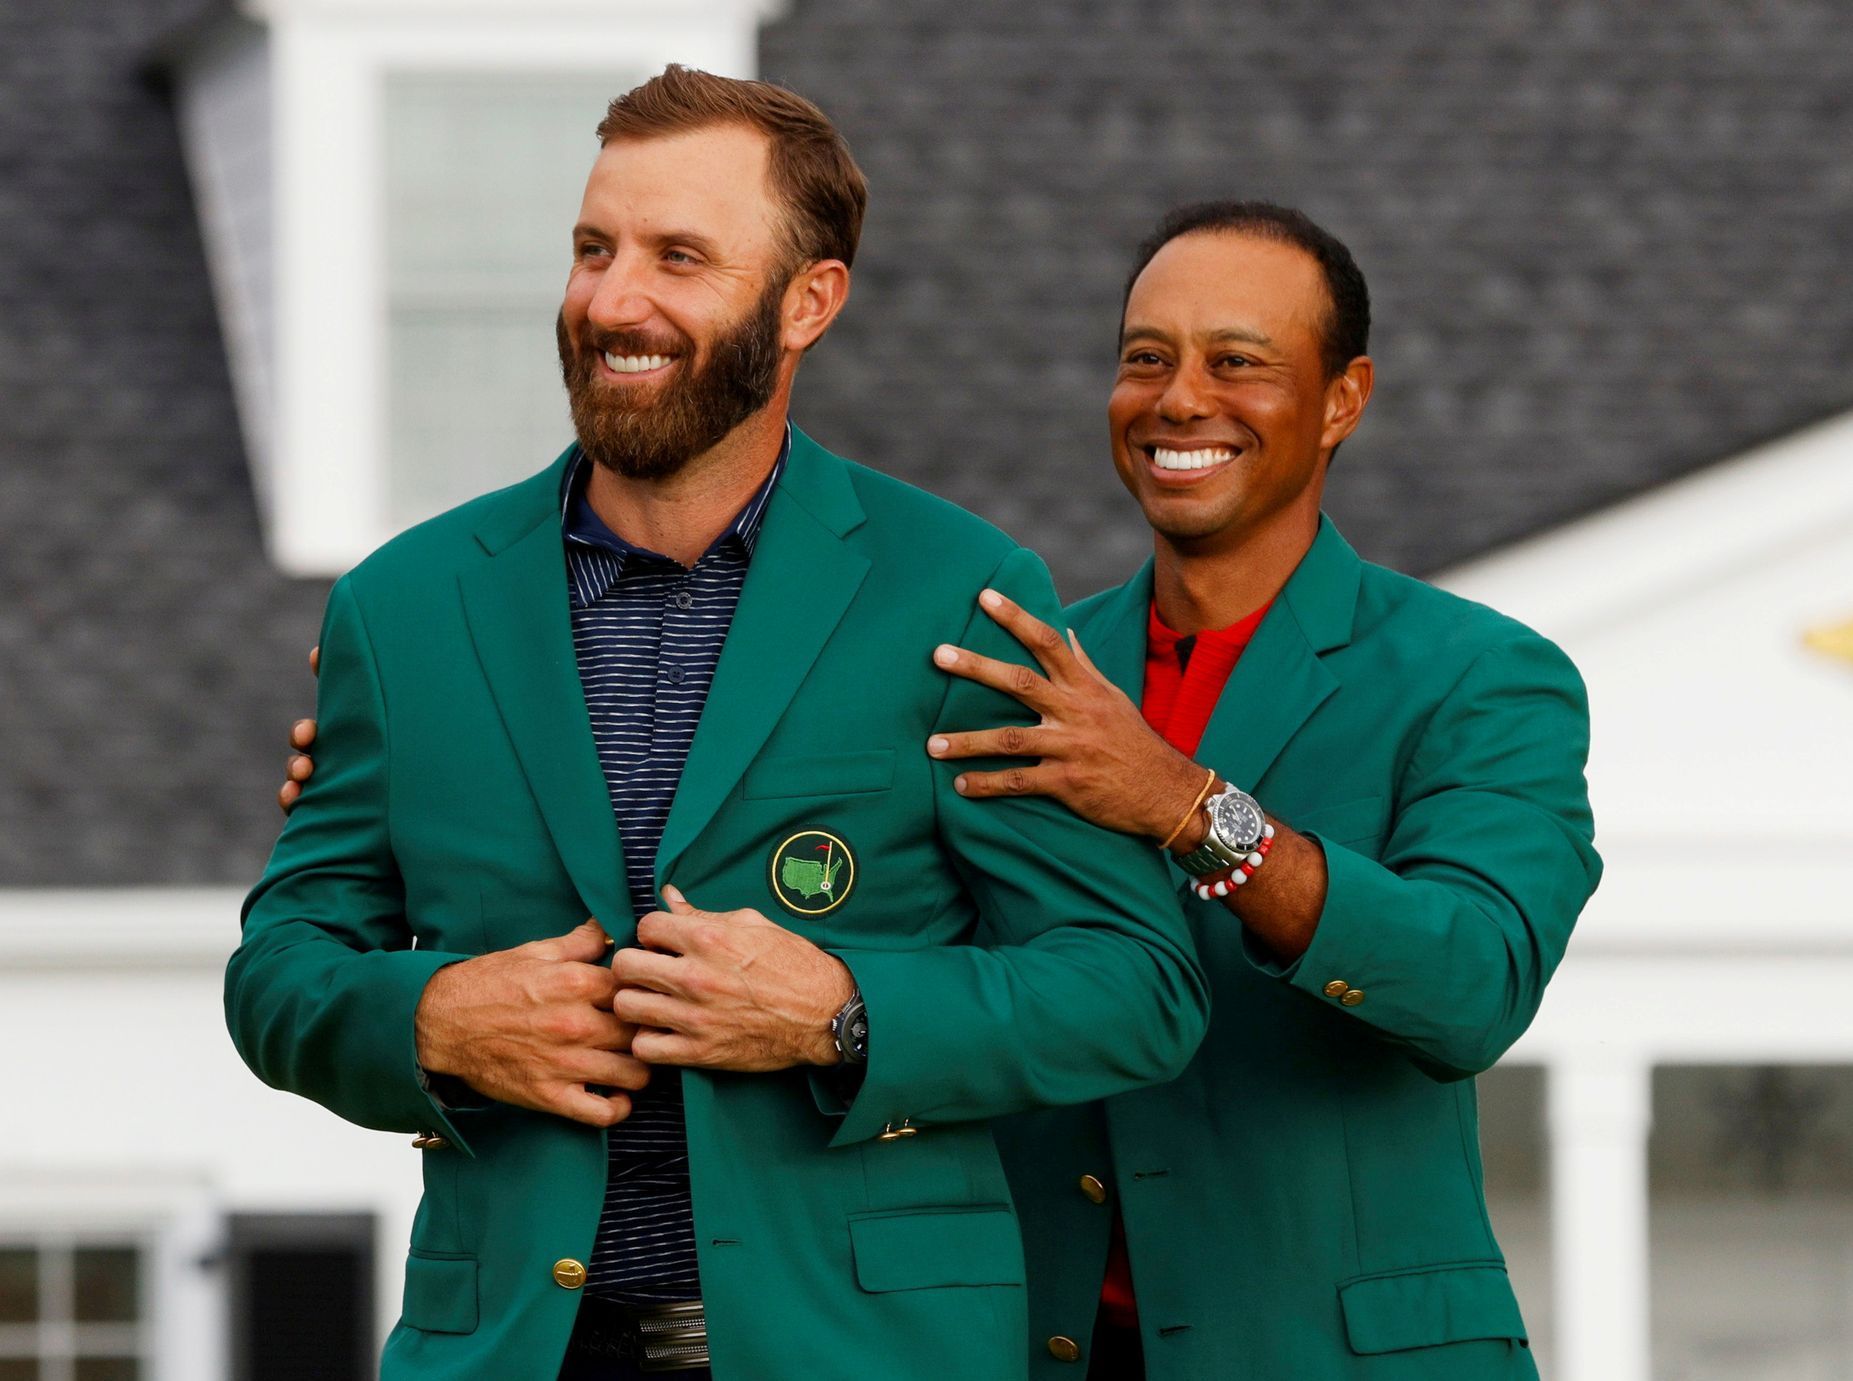 Nejhezčí fotky Reuters 2020 - Golfista Dustin Johnson dostává od Tigera Woodse zelené sako pro vítěze Masters